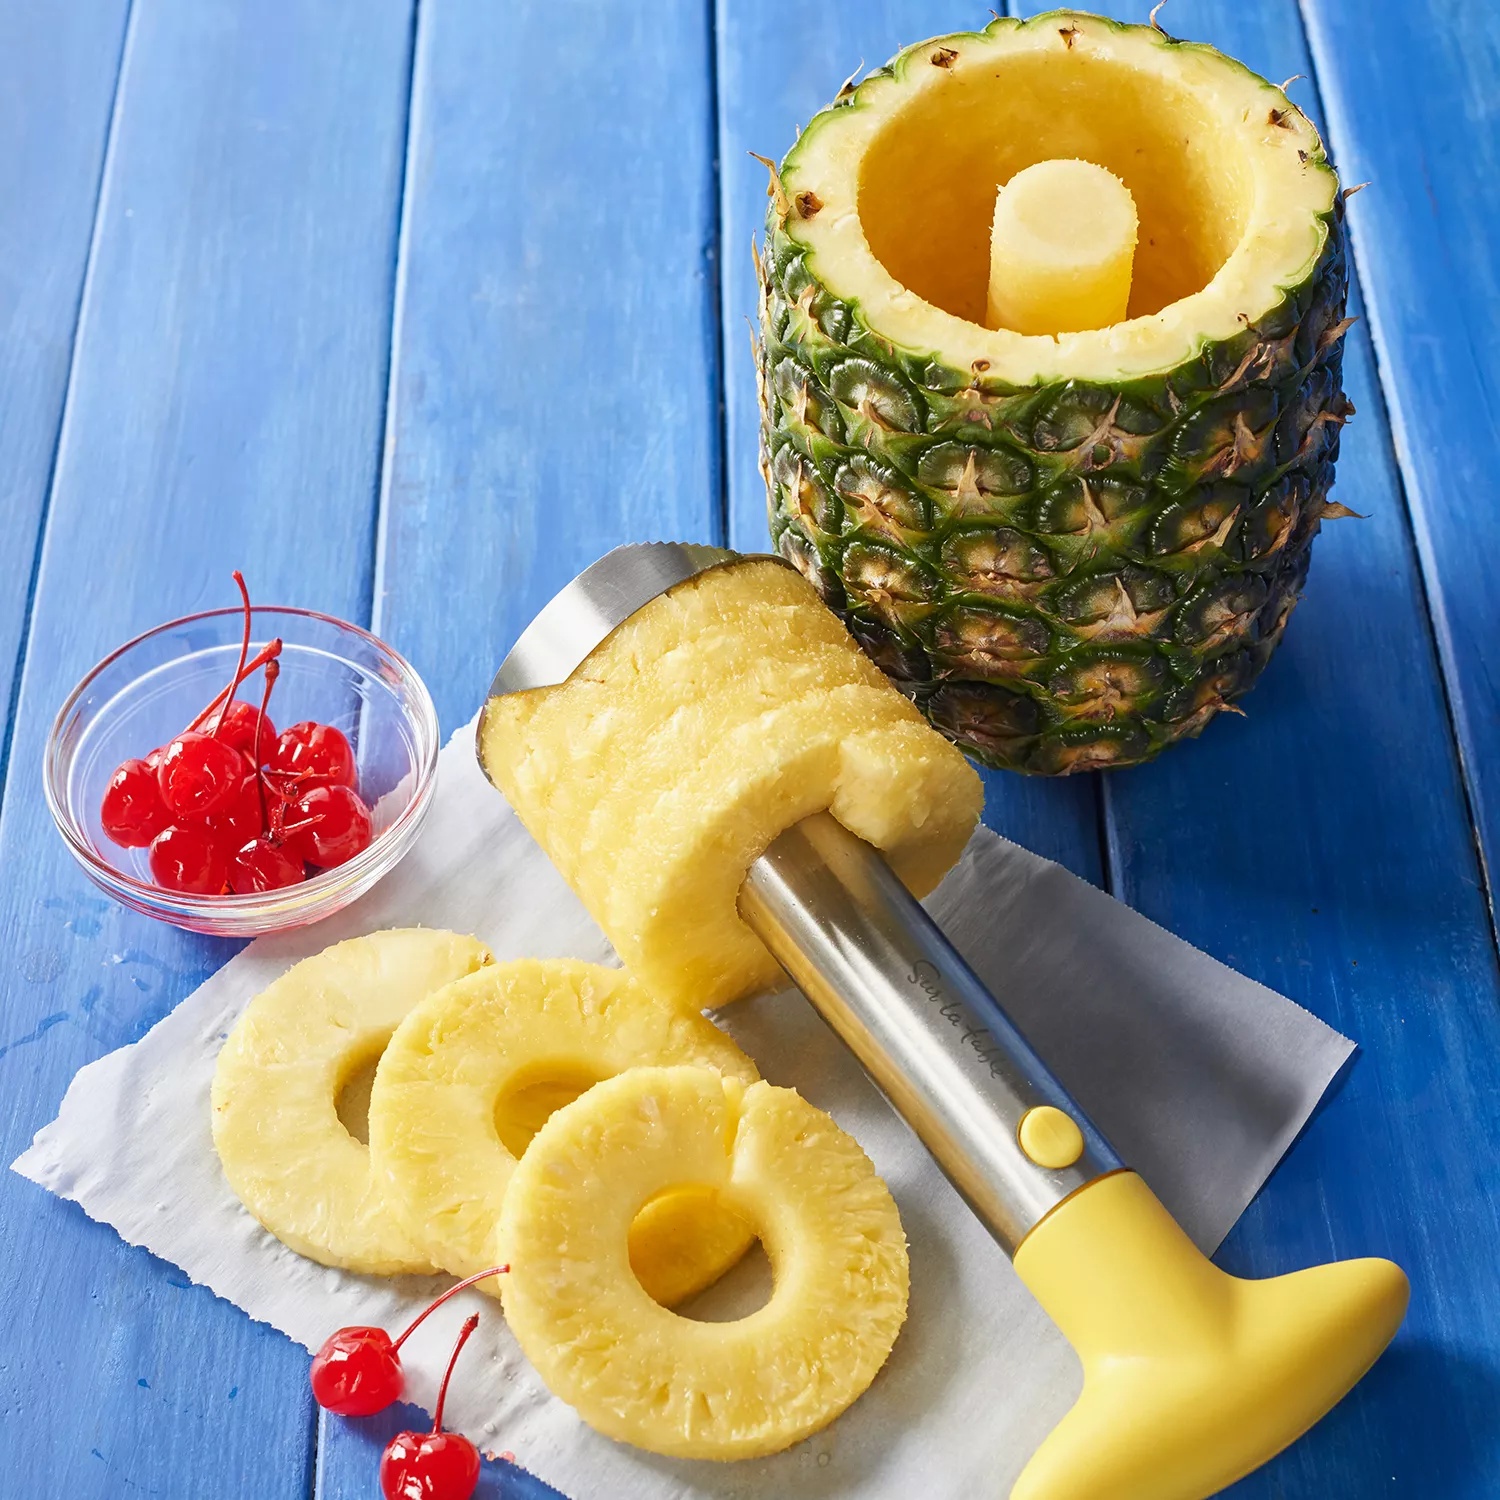 OXO Pineapple Slicer - Cooks